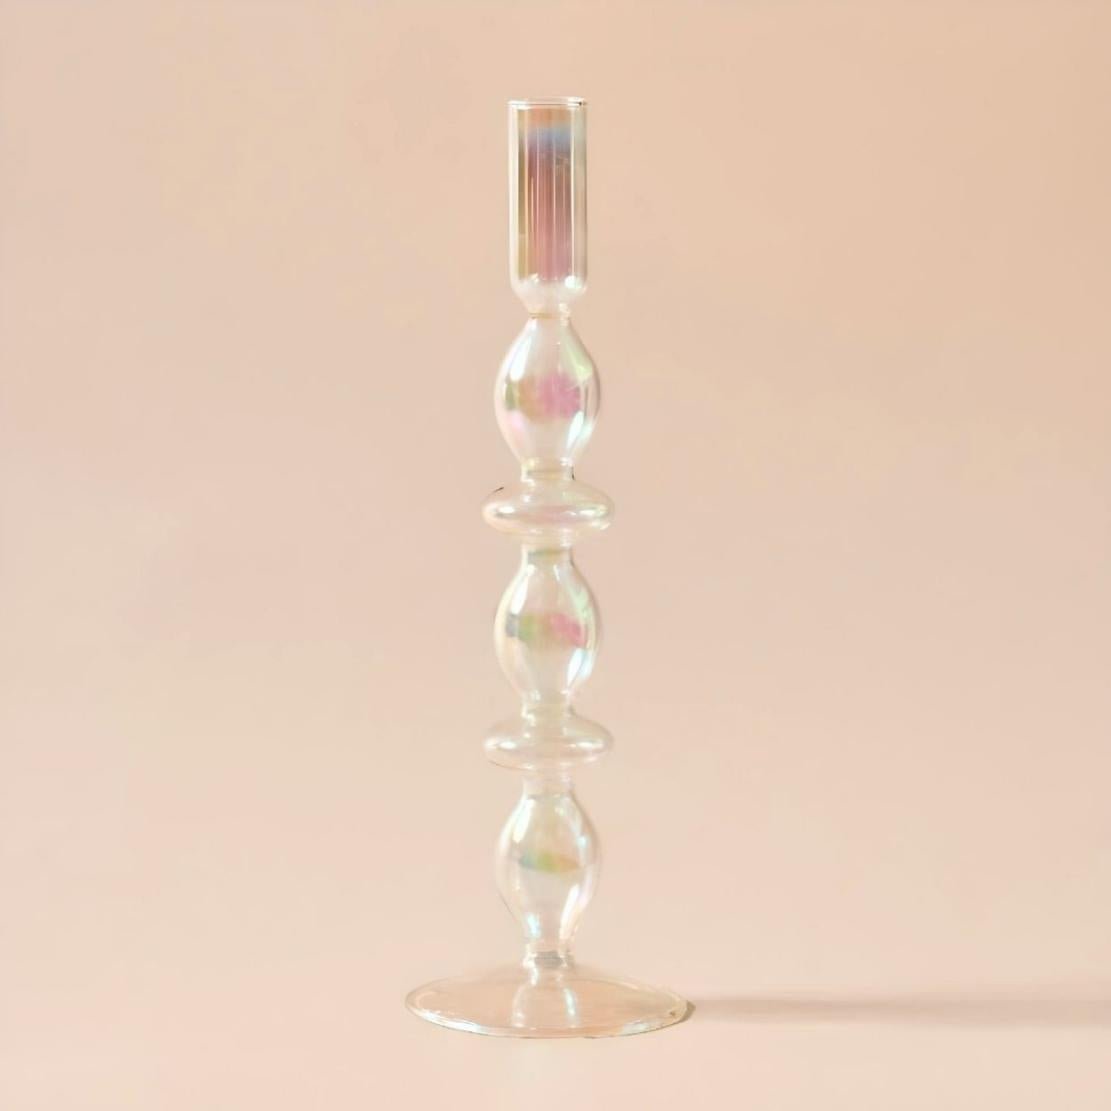 Layered ball shiny glass candlestick holder